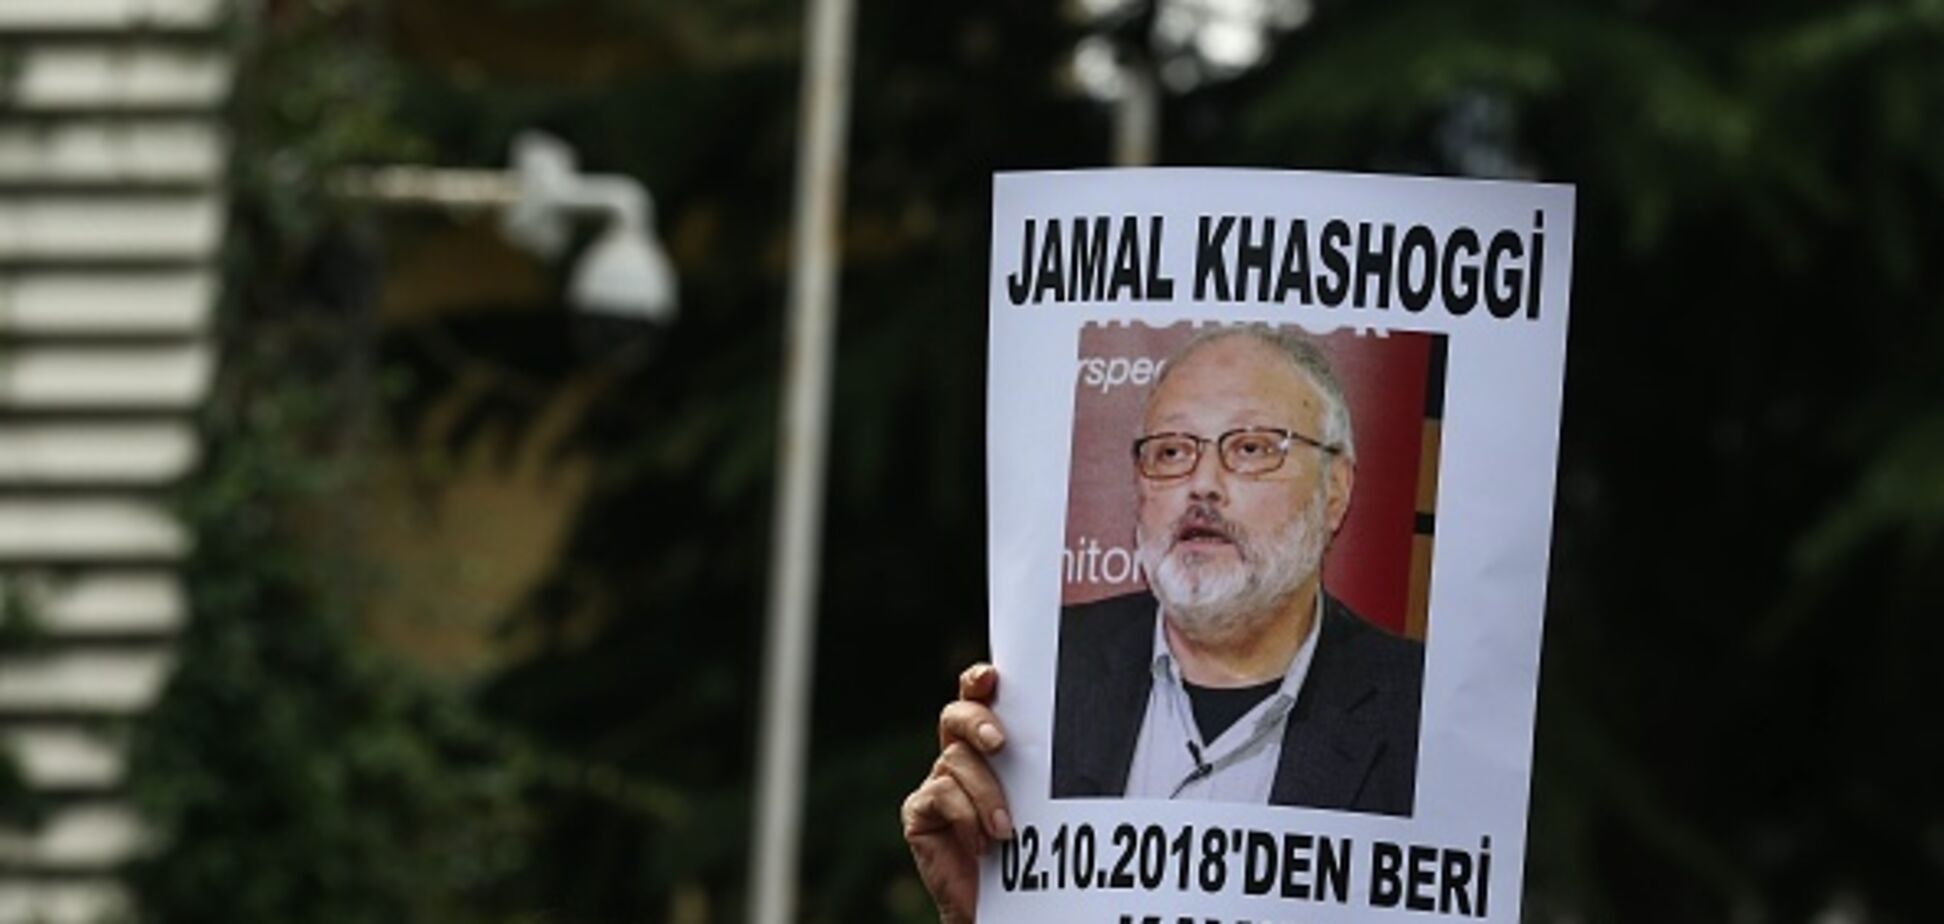 ''Тело нашли в колодце'': вокруг убийства Хашогги разгорелся скандал